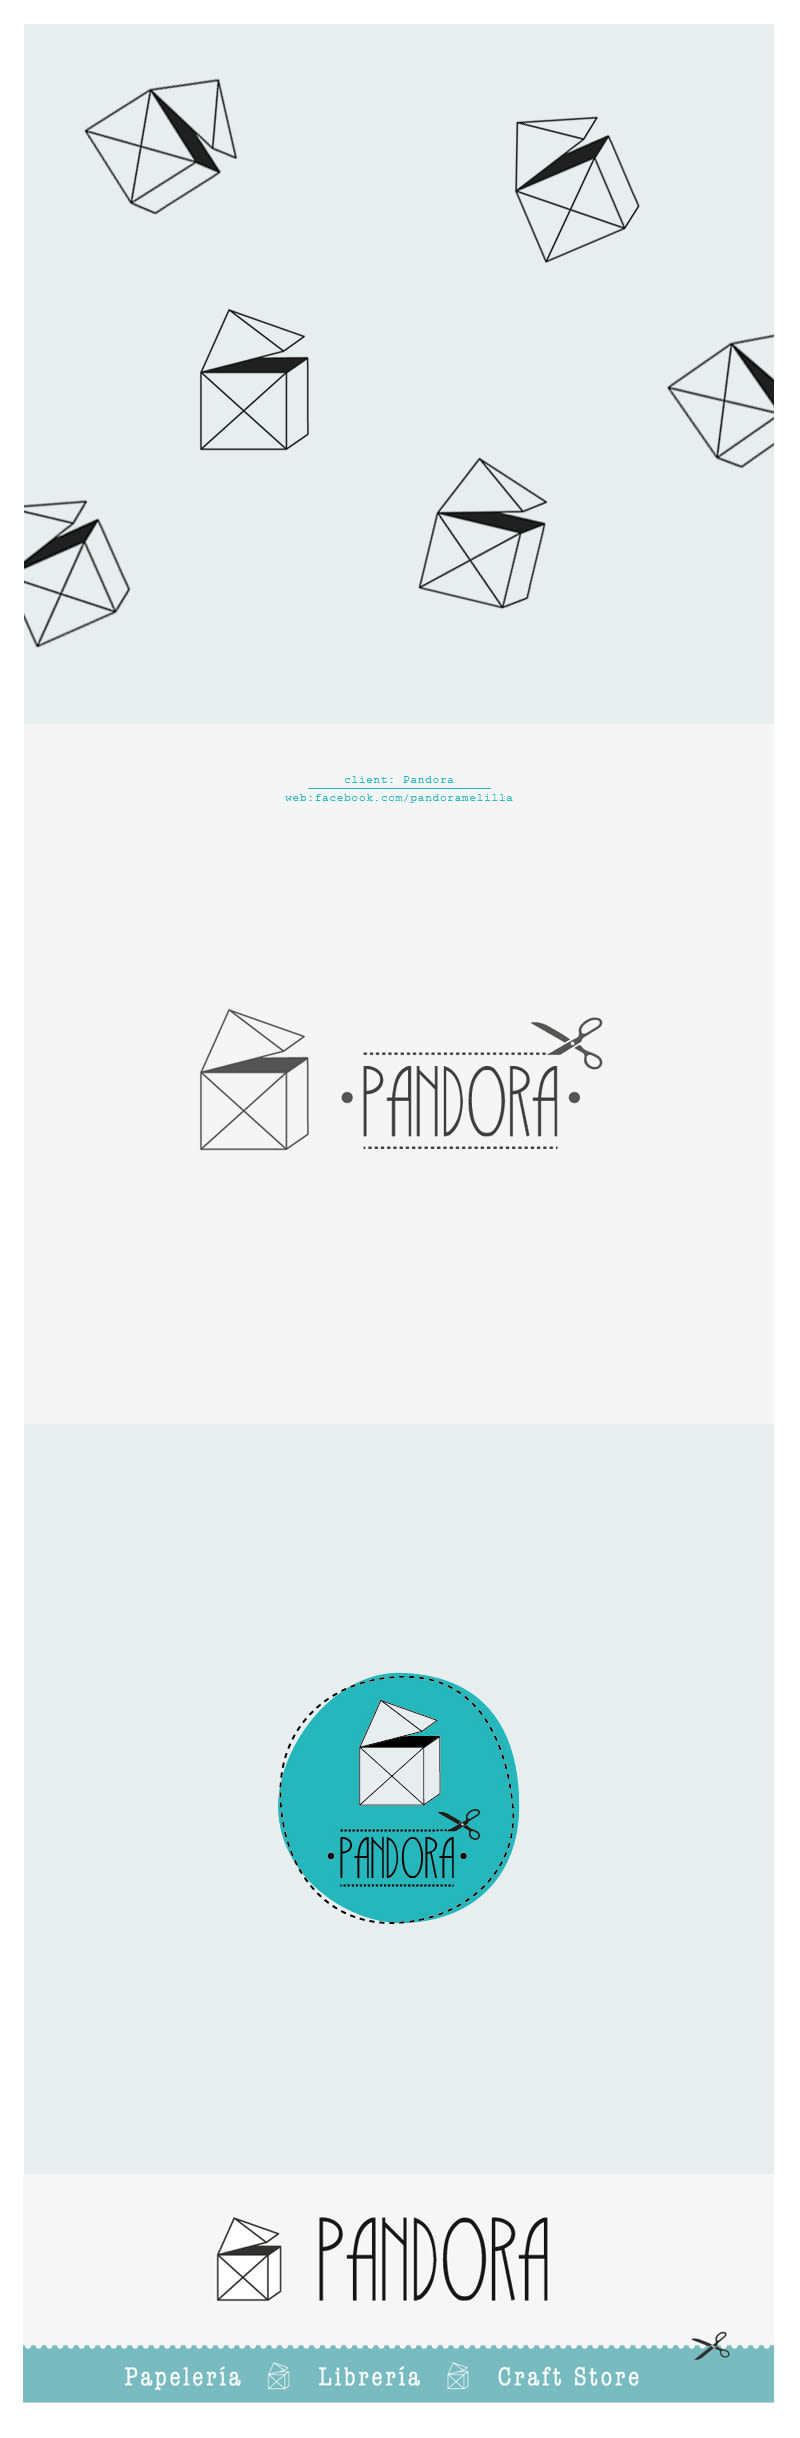 Logotipo Pandora -1